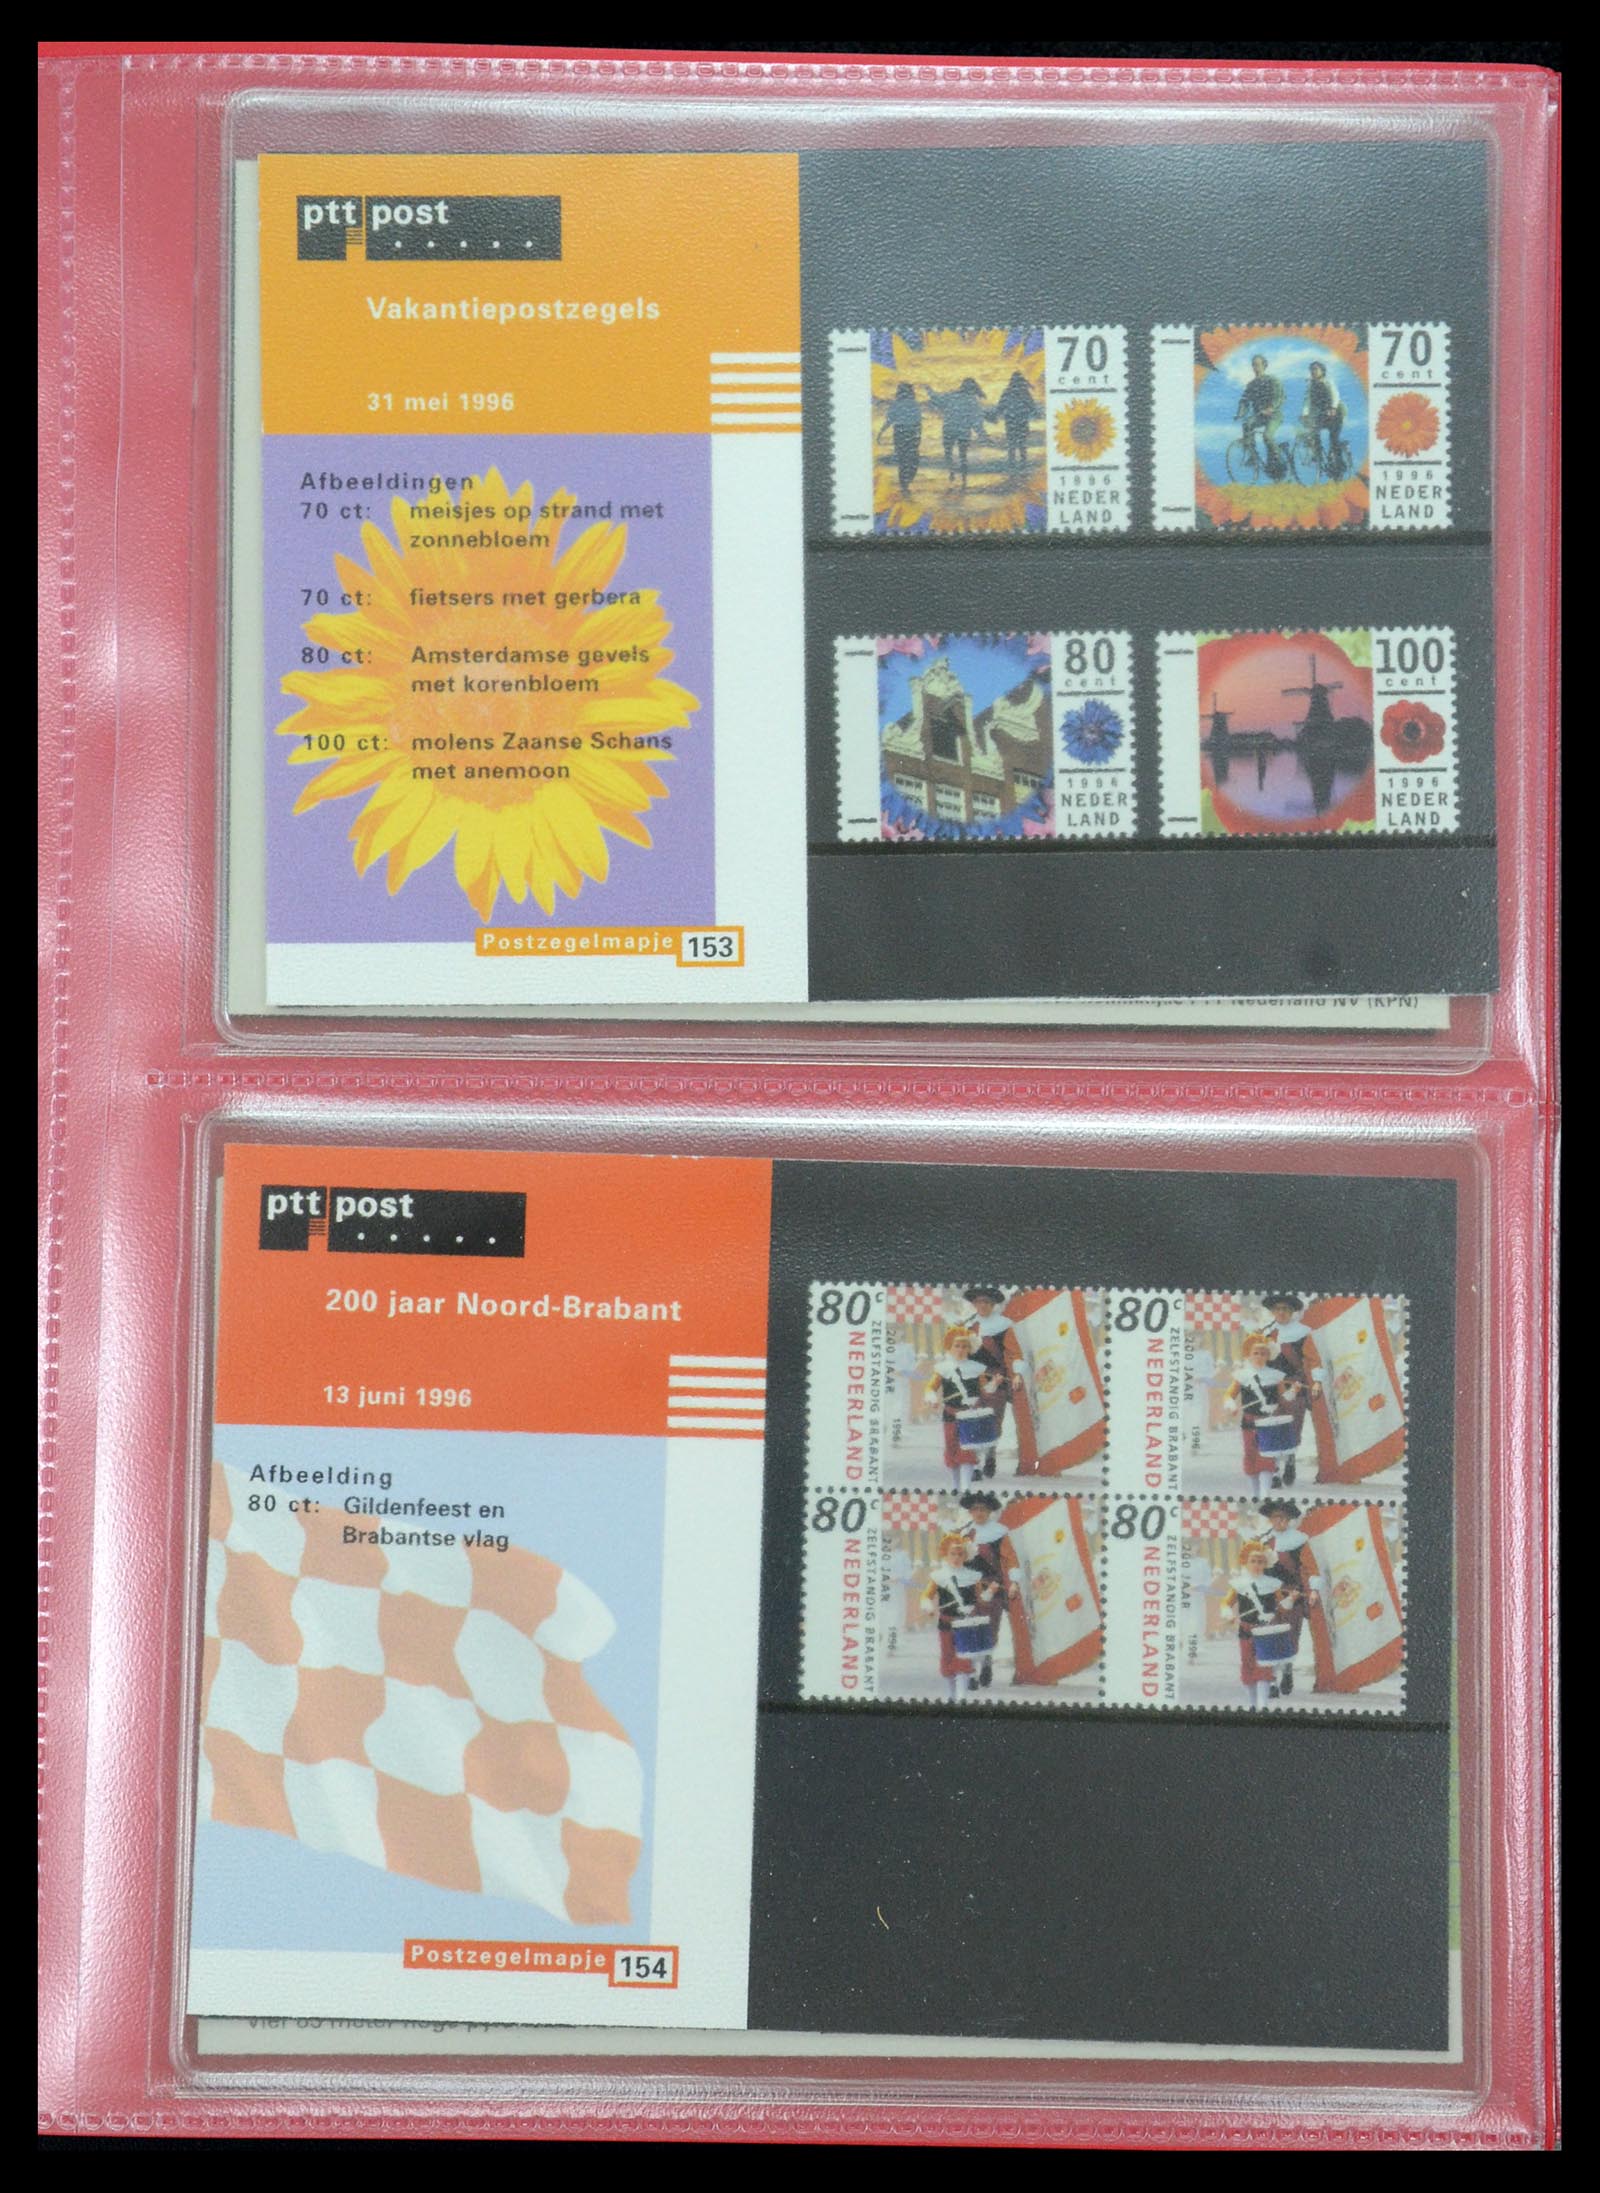 35692 079 - Stamp Collection 35692 Netherlands presentation packs 1982-2021!!